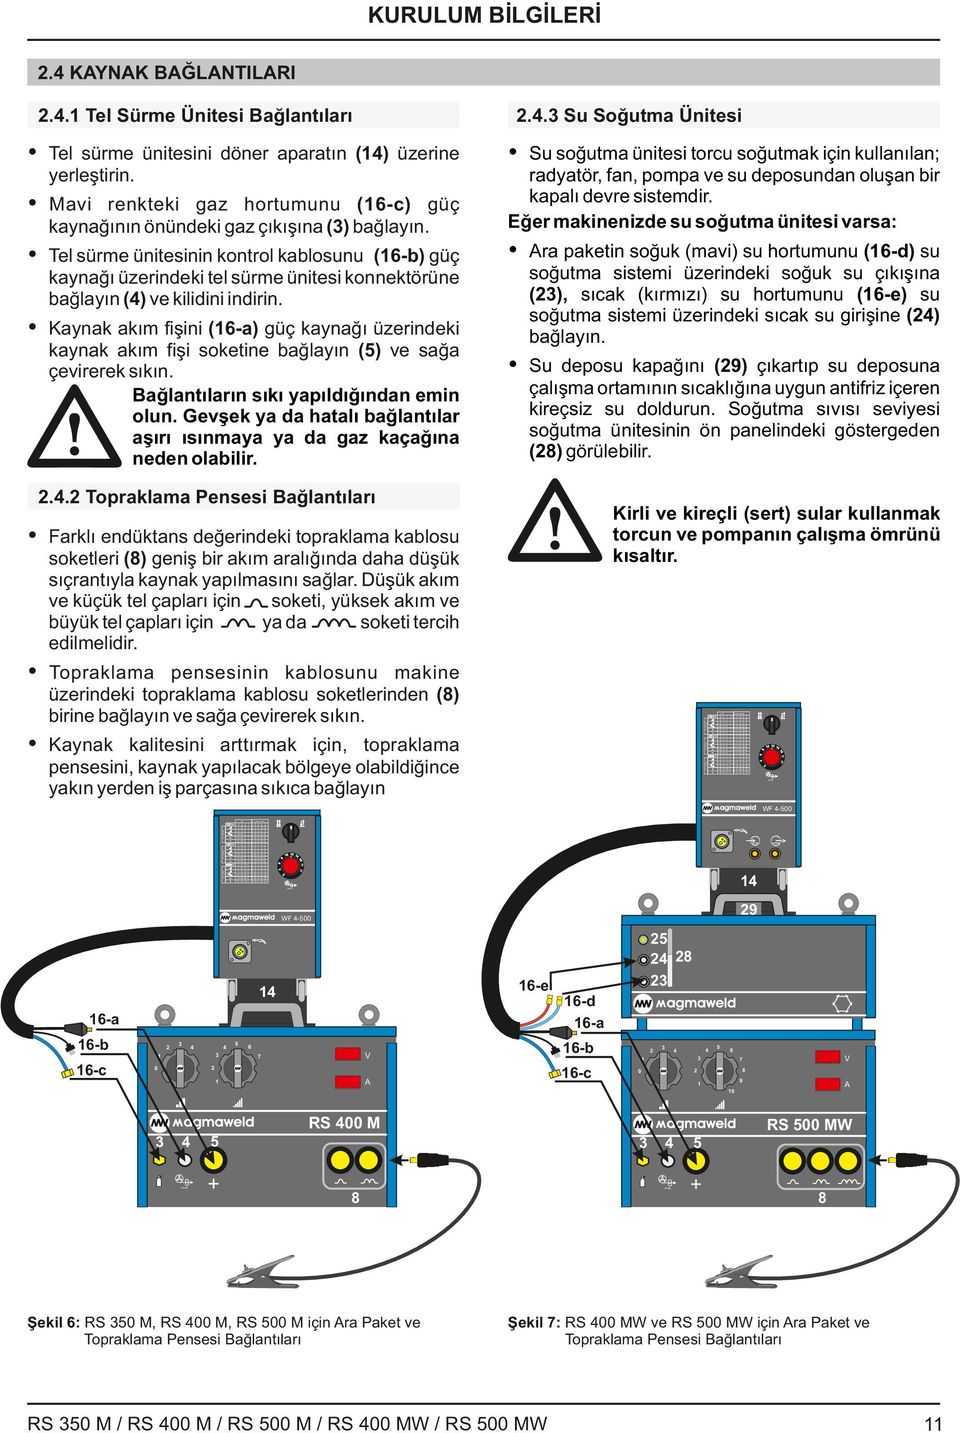 Eğer makinenizde su soğutma ünitesi varsa: Ÿ Tel sürme ünitesinin kontrol kablosunu (-b) güç Ÿ ra paketin soğuk (mavi) su hortumunu (-d) su Ÿ Mavi renkteki gaz hortumunu (-c) güç kaynağı üzerindeki